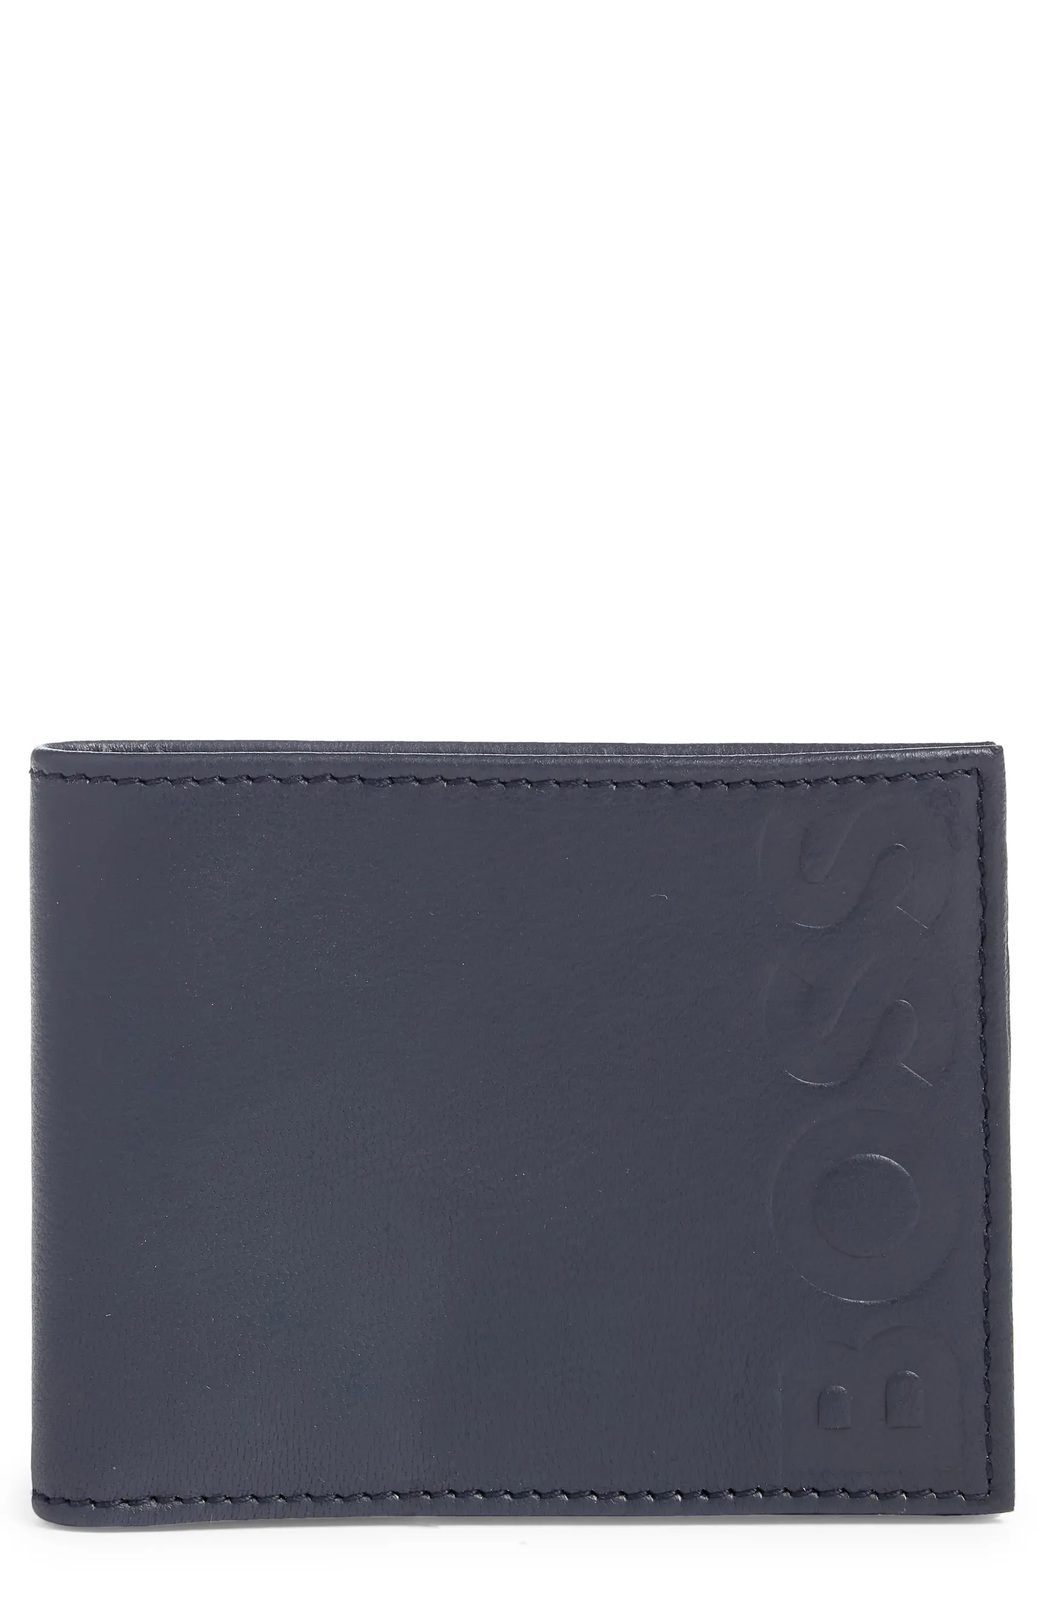 Hugo Boss Logo Embossed Bifold Leather Wallet, Color Dark Blue - $75.00